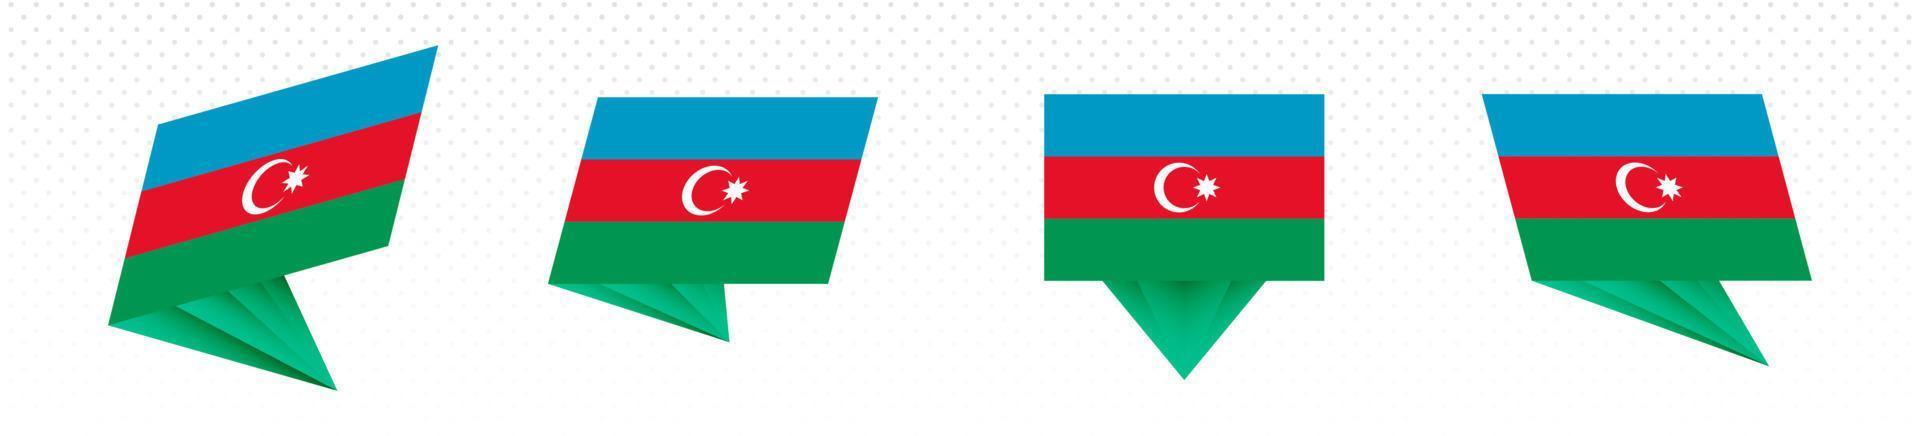 bandera de azerbaiyán en diseño abstracto moderno, juego de banderas. vector